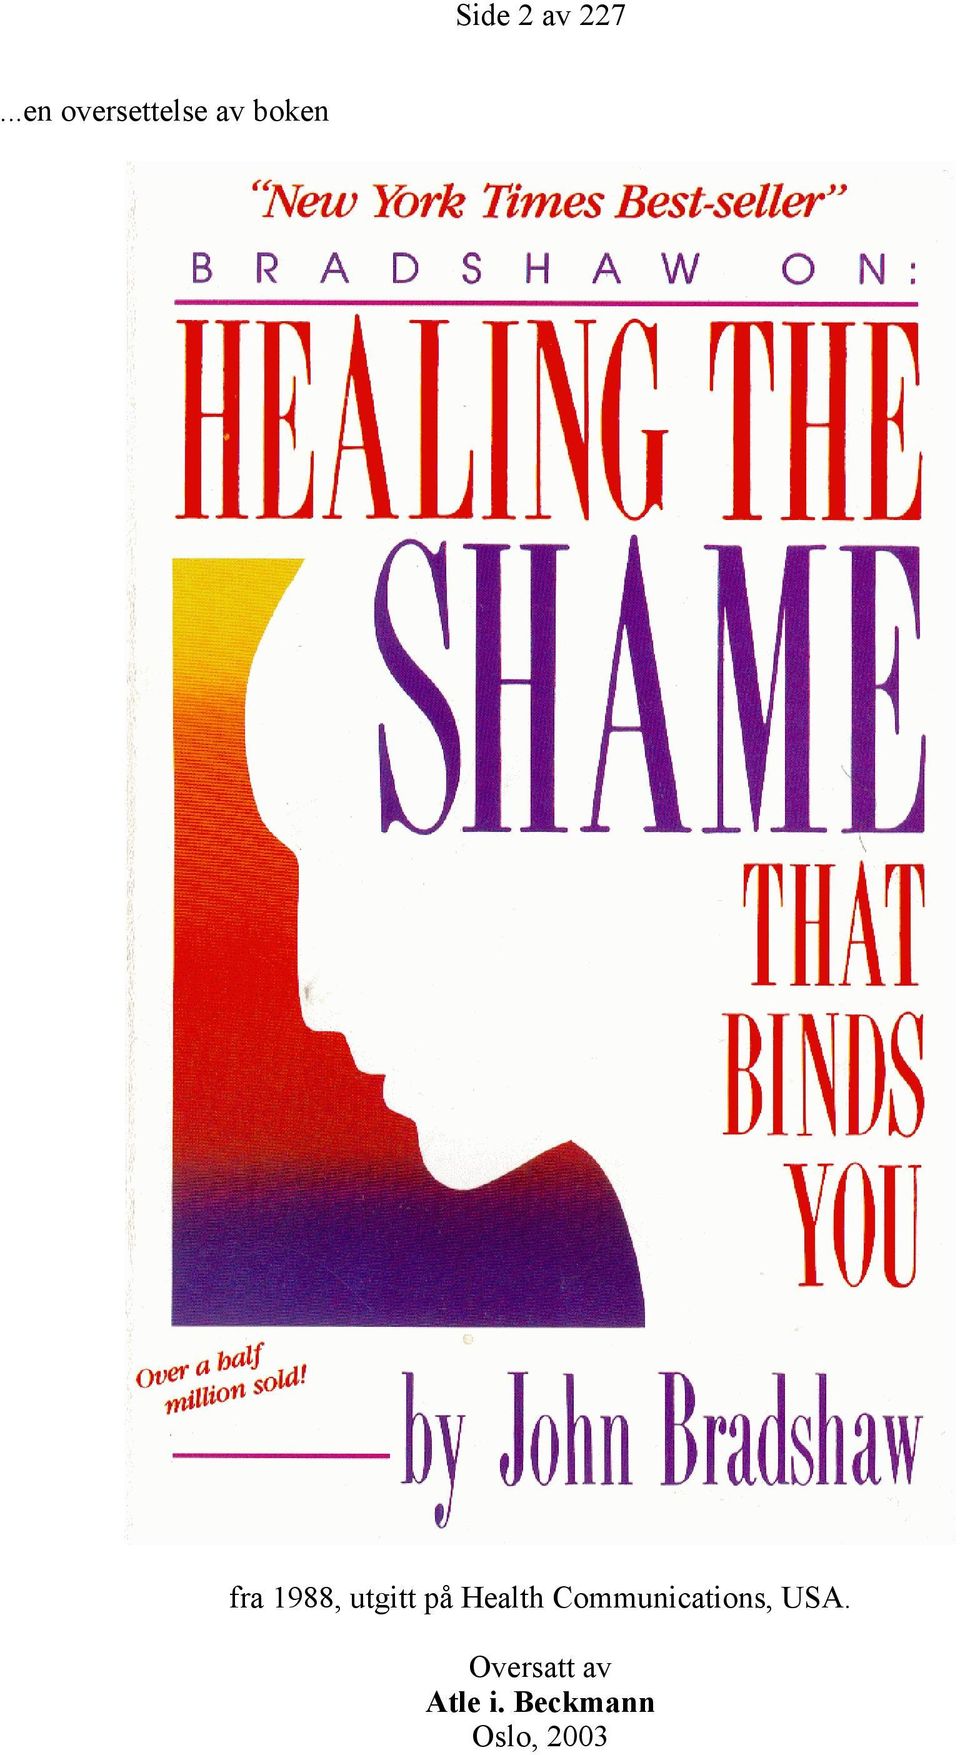 1988, utgitt på Health